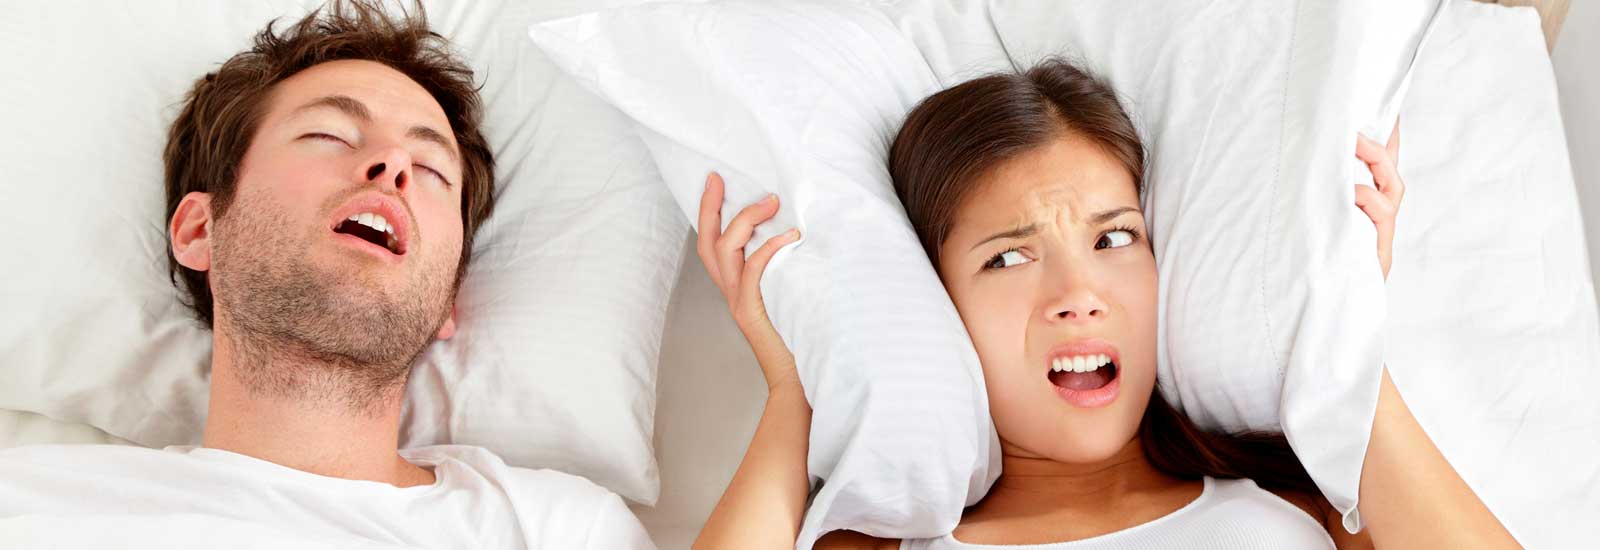 How a dentist can help with obstructive sleep apnea treatment